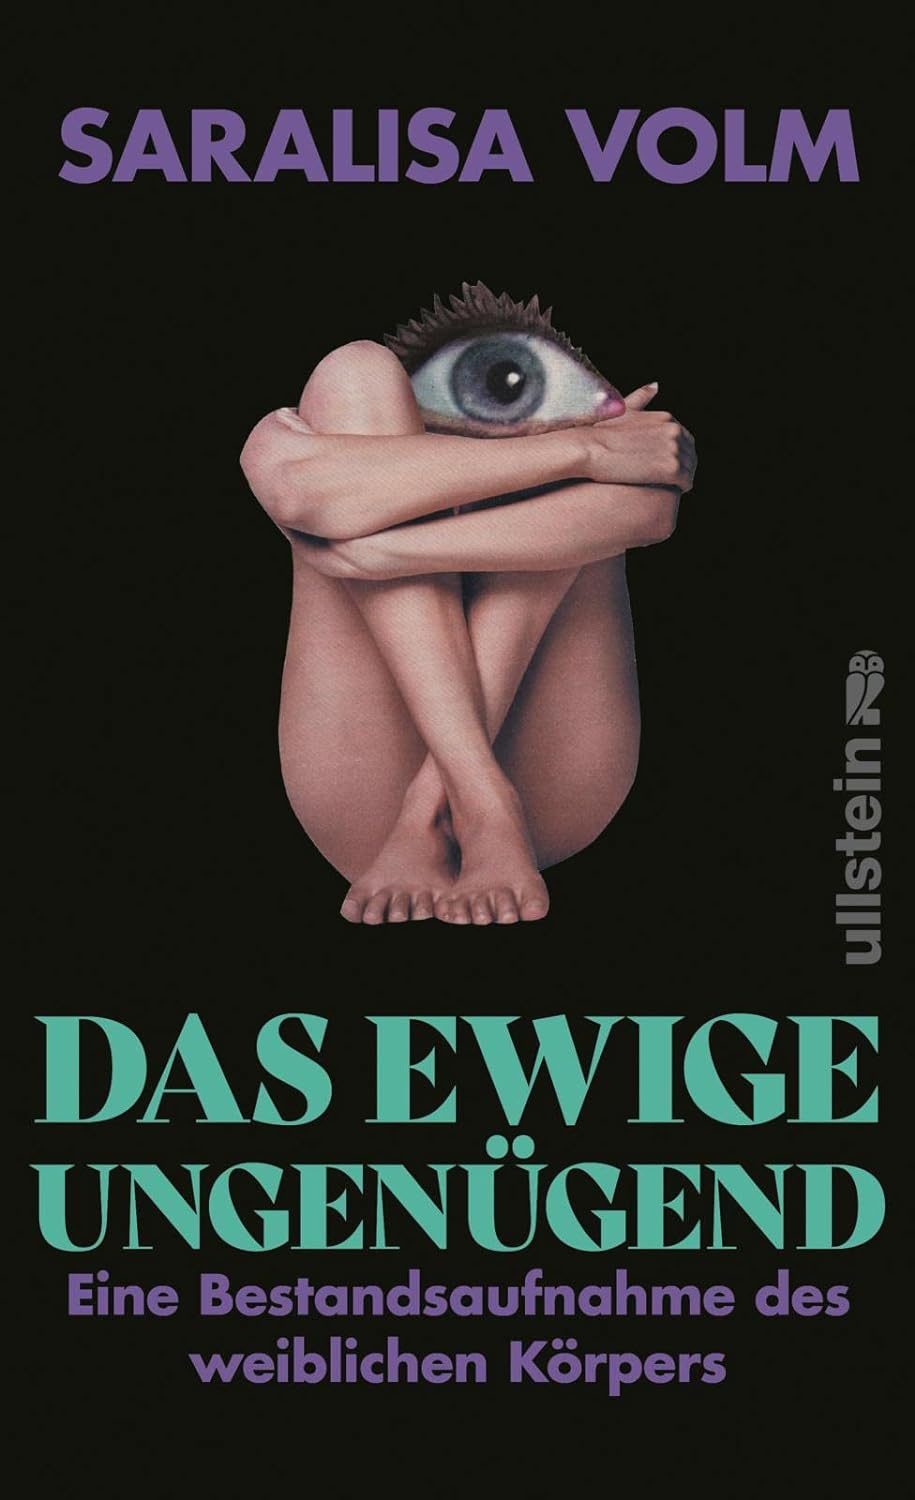 Saralisa Volm: Das ewige Ungenügend (Hardcover, Ullstein)